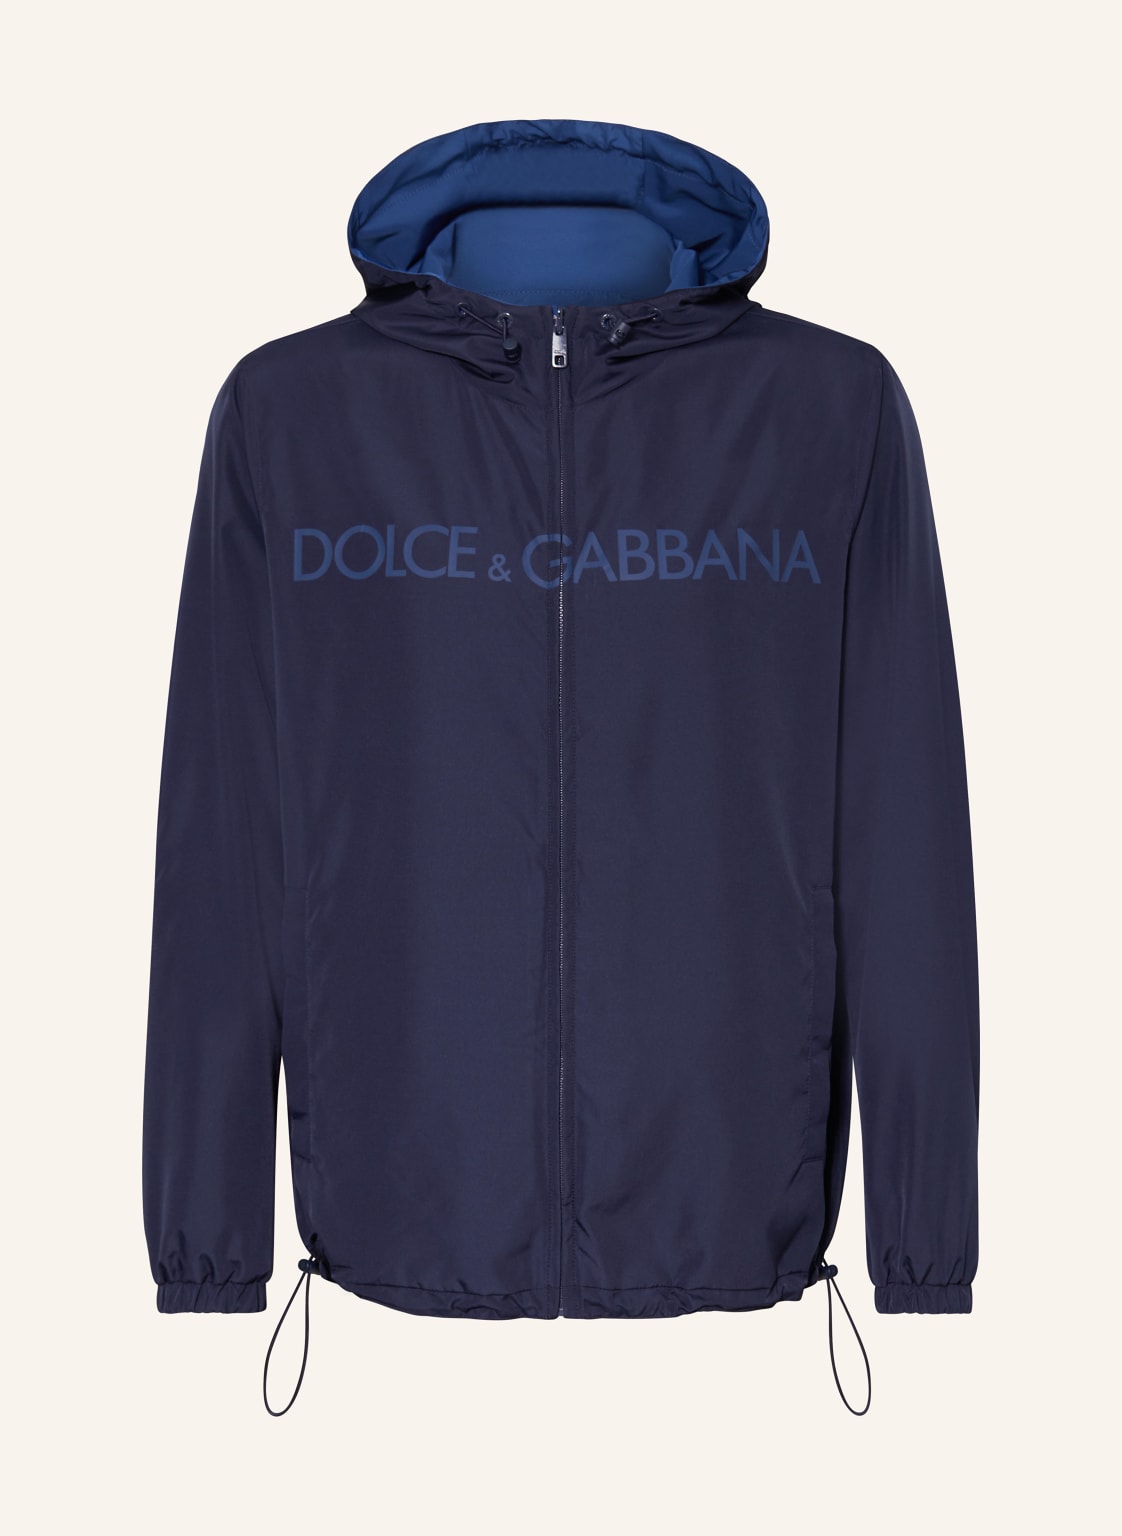 Dolce & Gabbana Jacke Zum Wenden blau von Dolce & Gabbana